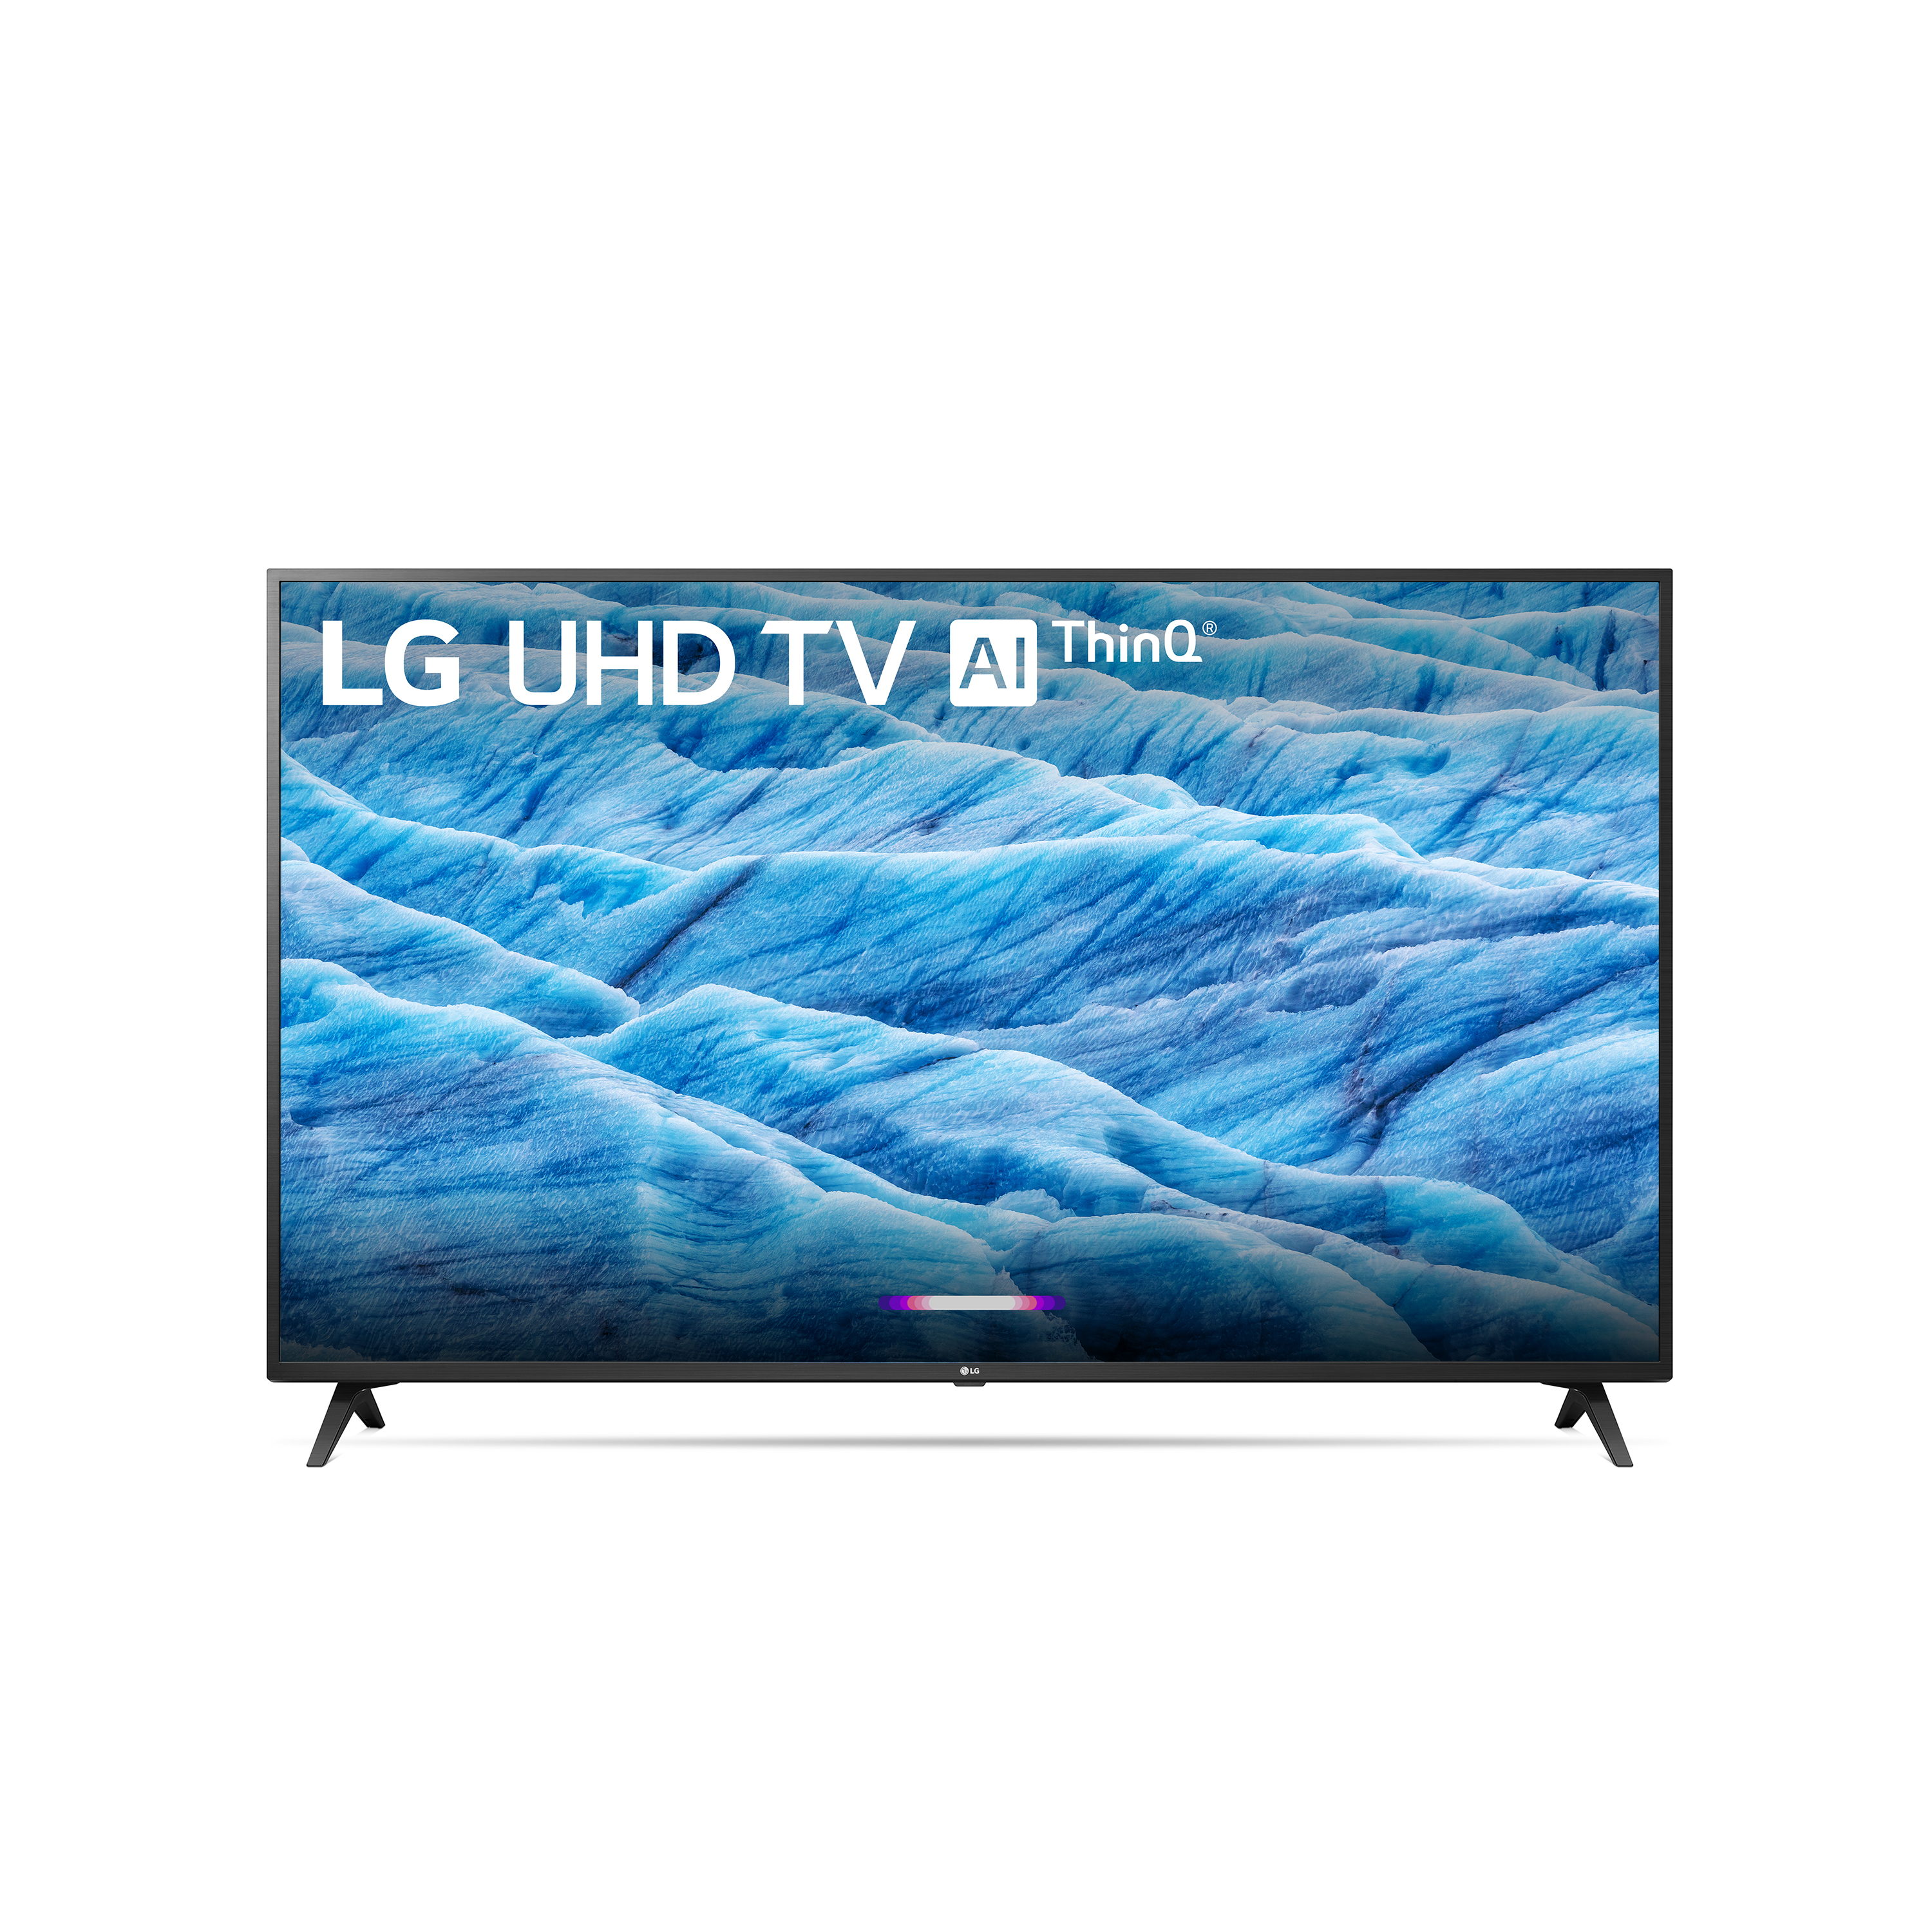 LG 65" Class 4K (2160P) Ultra HD Smart LED HDR TV 65UM7300PUA 2019 Model - image 1 of 14